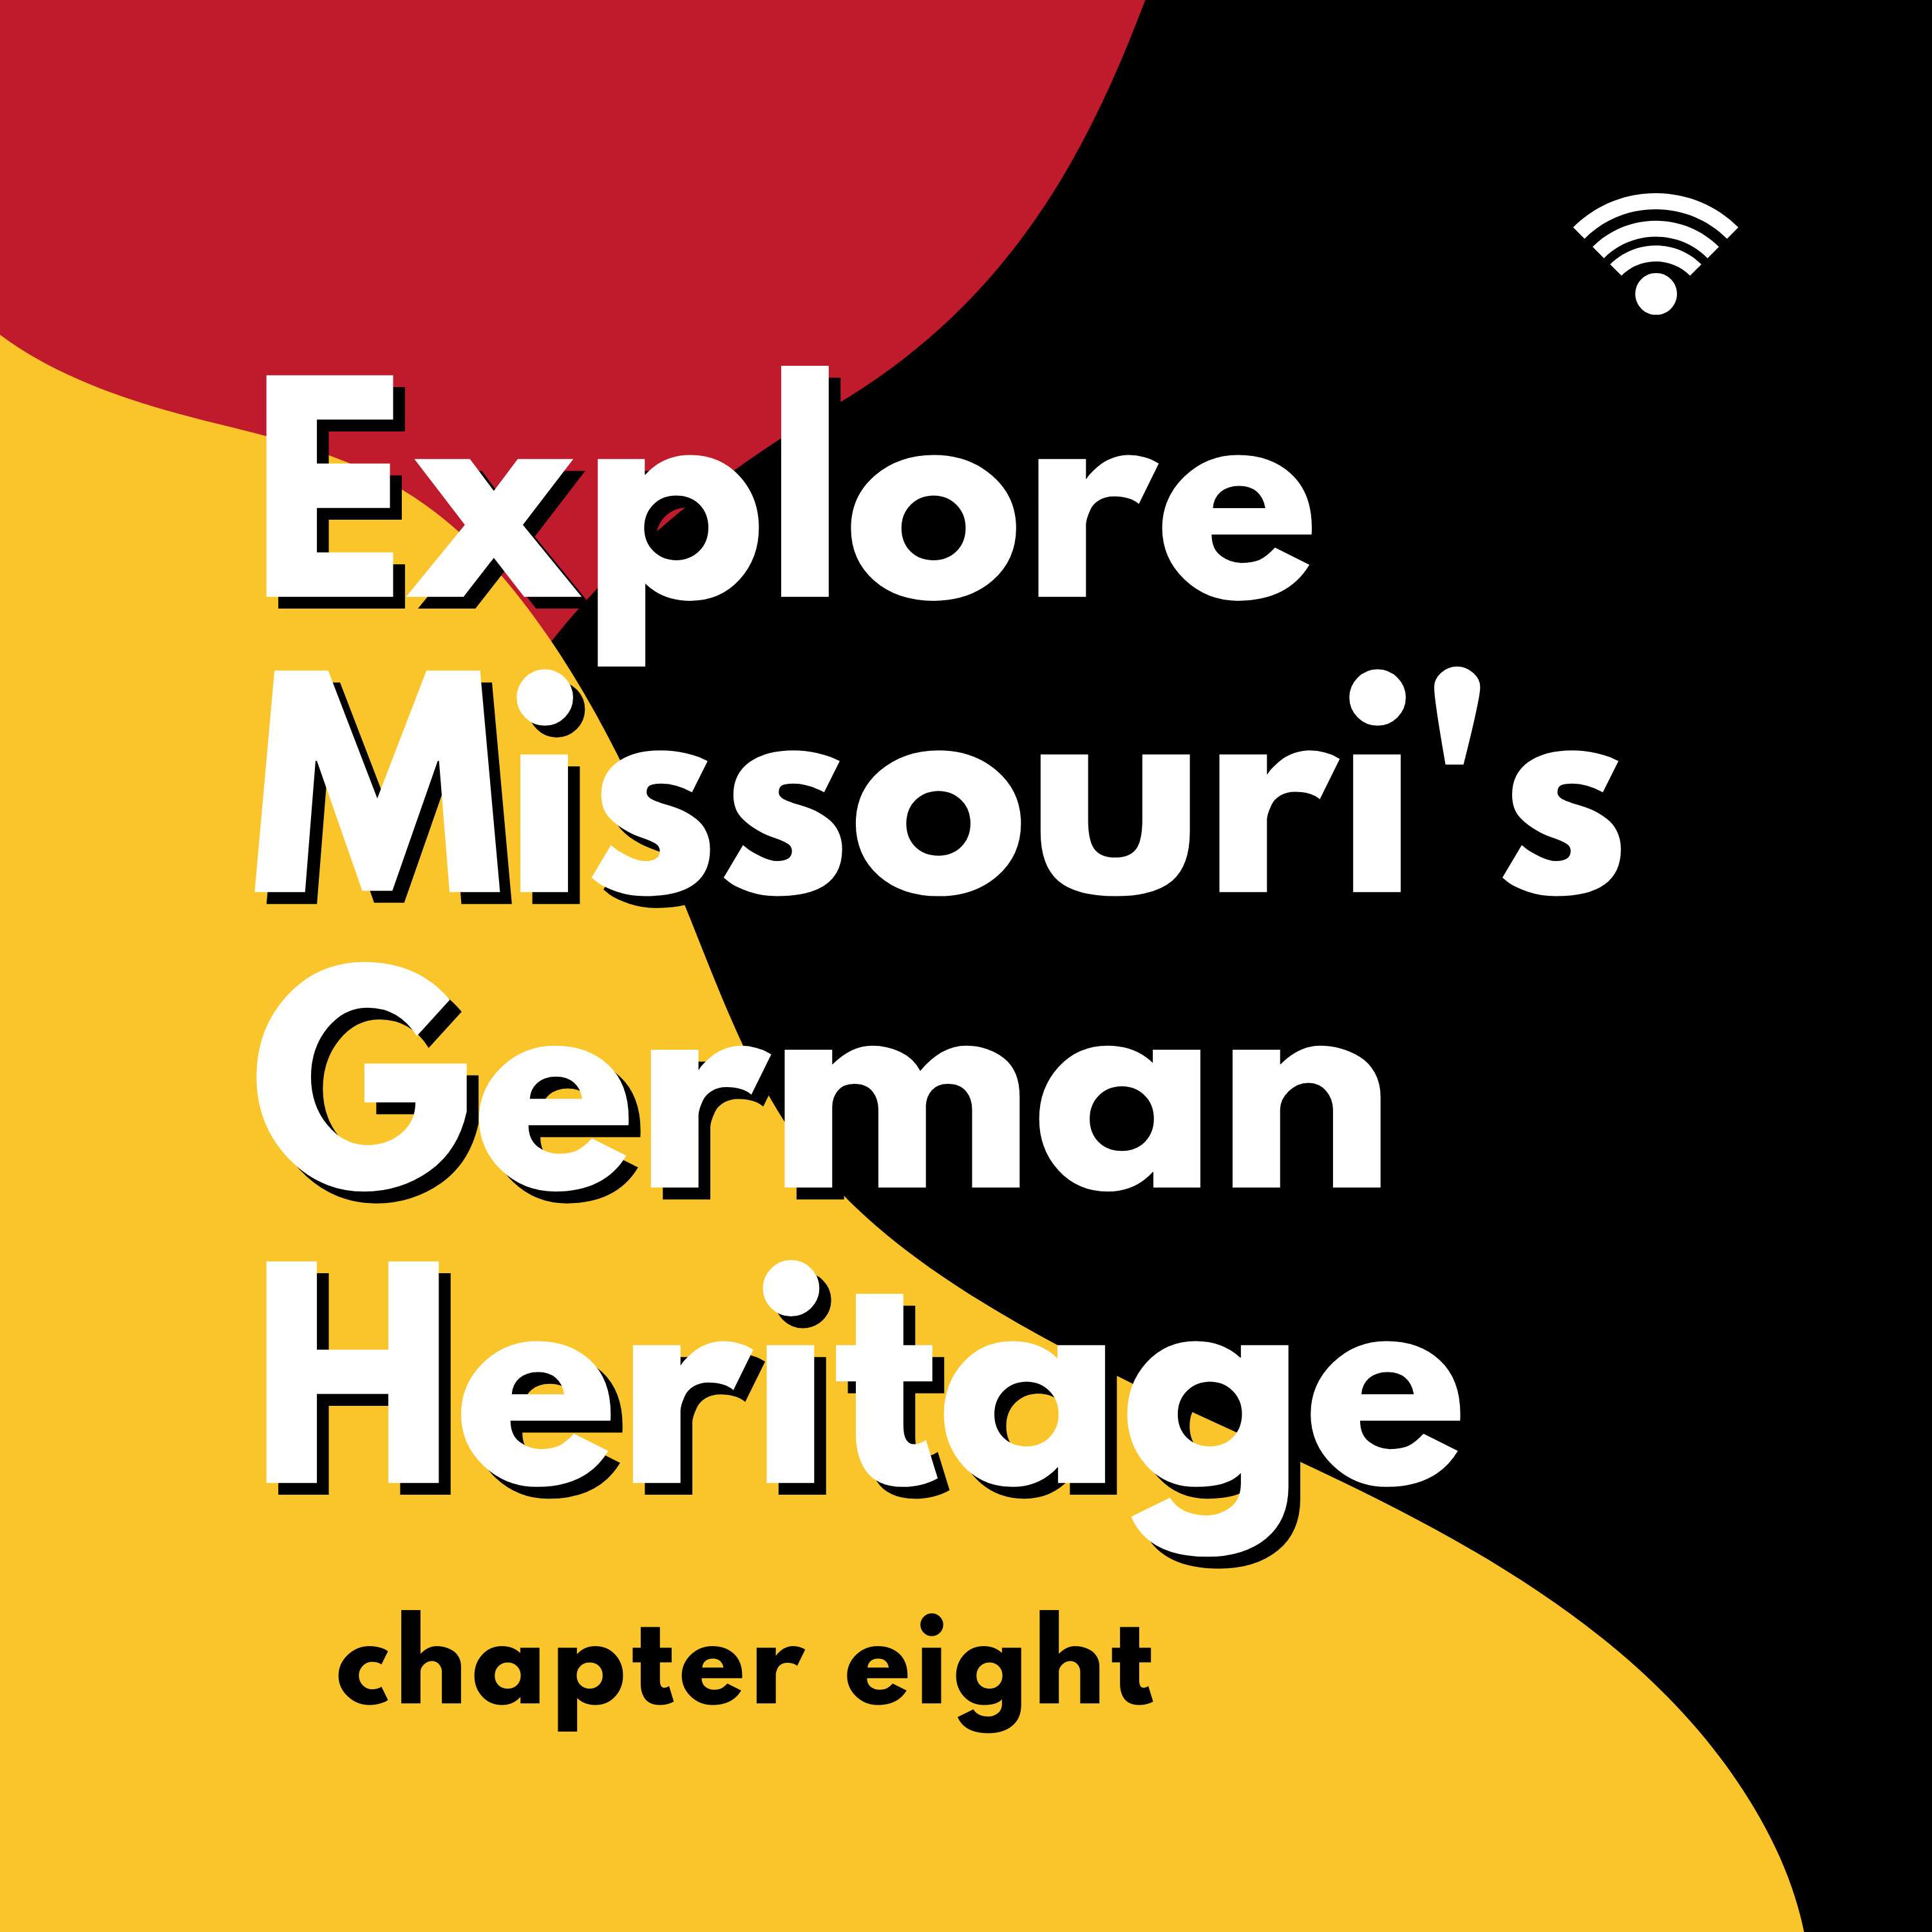 Chapter 8: “Eiswein, Savoring Missouri’s German Heritage”